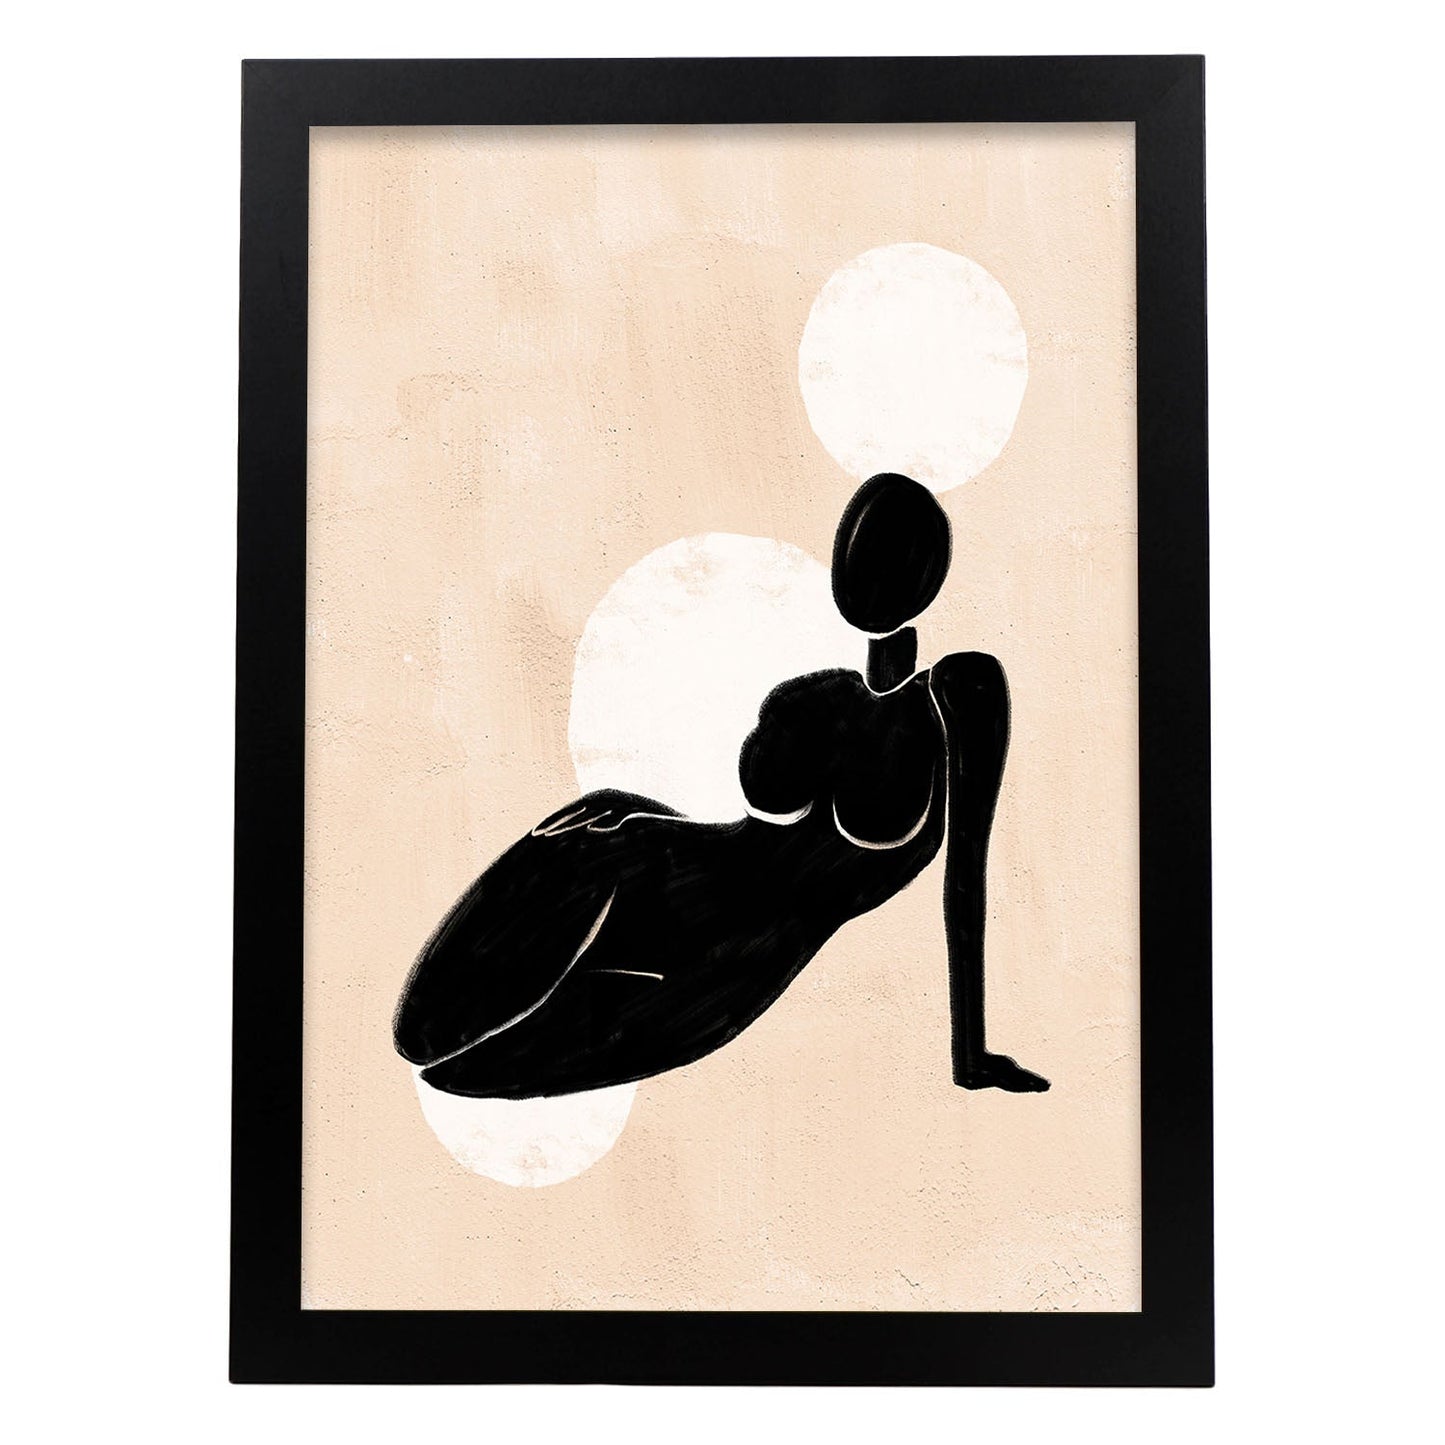 Poster con ilustracion de mujer. Dibujos con formas, caras, cuerpos y gestos de mujeres. 'Mujeres 8'.-Artwork-Nacnic-A4-Marco Negro-Nacnic Estudio SL